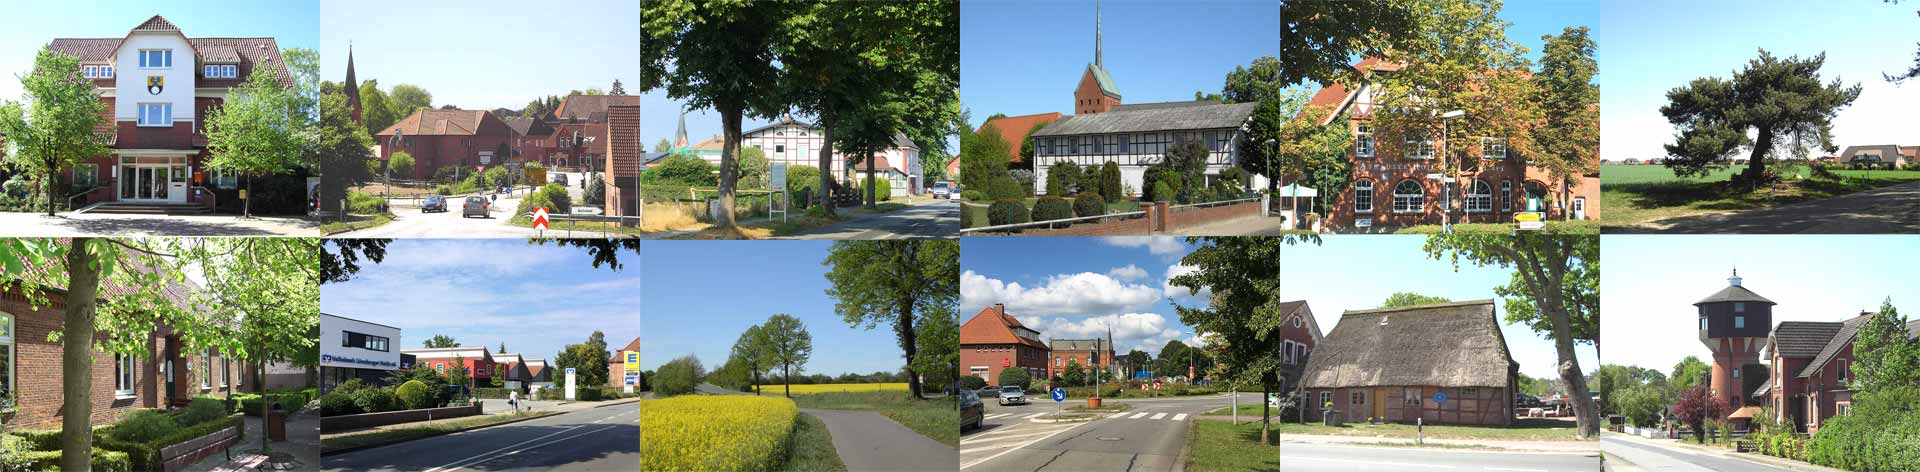 Gemeinde Stelle im Landkreis Harburg